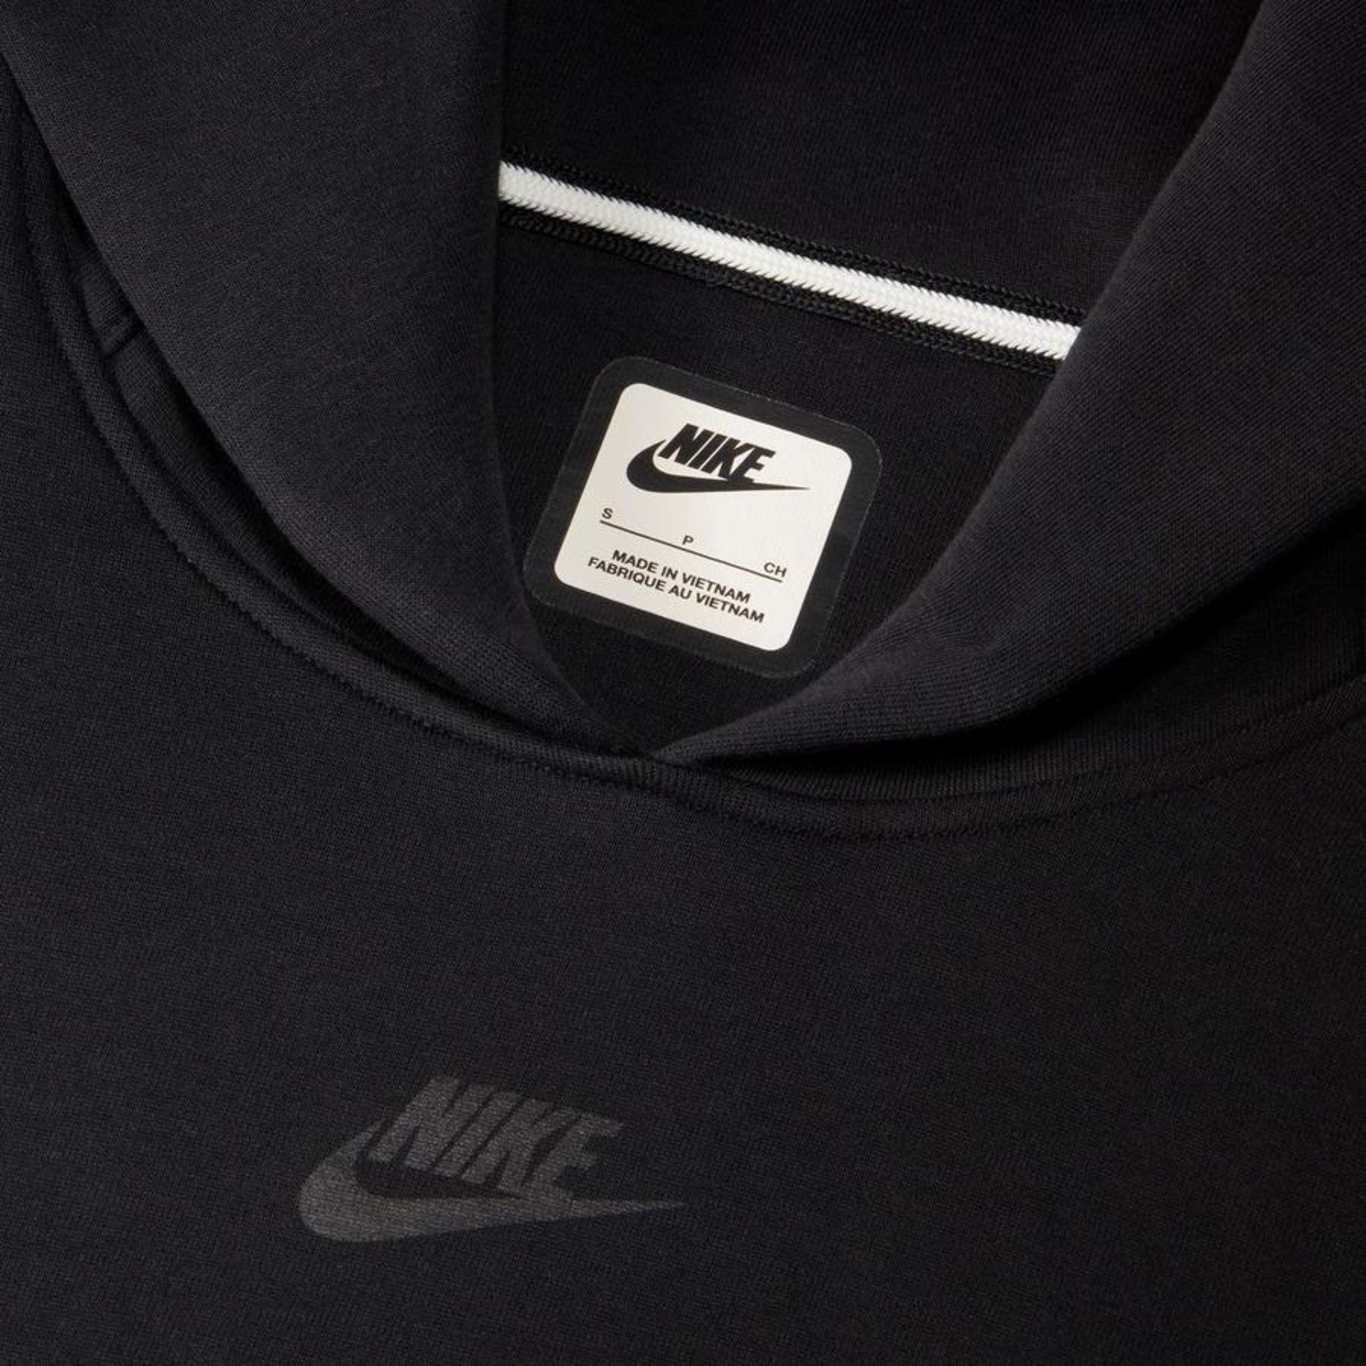 Blusão Nike Sportswear Tech Fleece - Feminino em Promoção